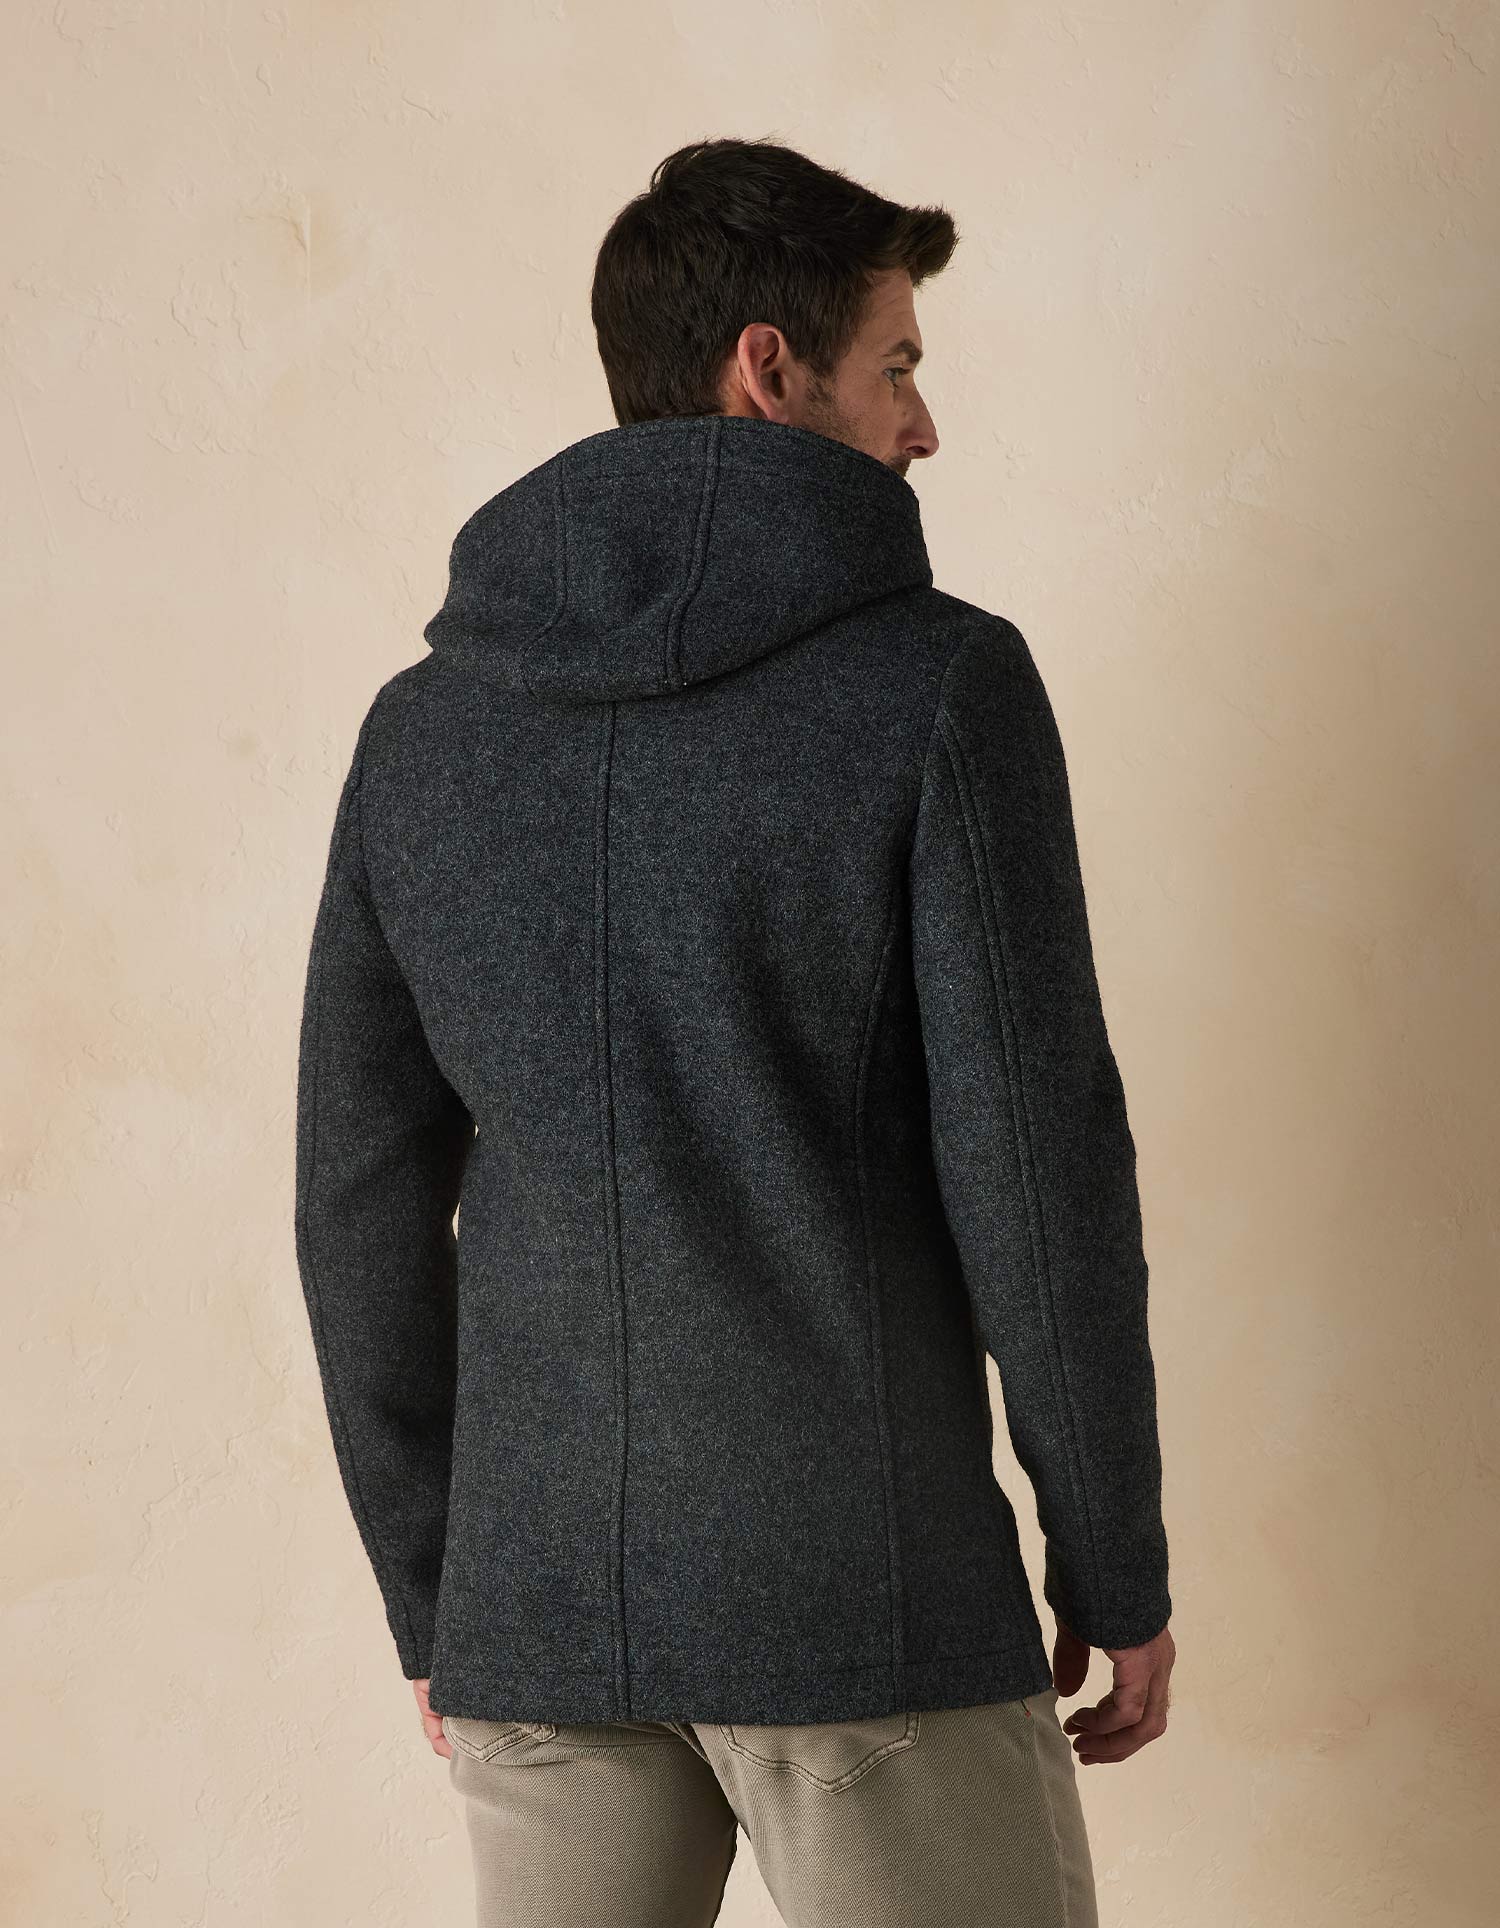 Normal Brand Balboa City Peacoat - Grey - 4 - Tops - Coats & Jackets